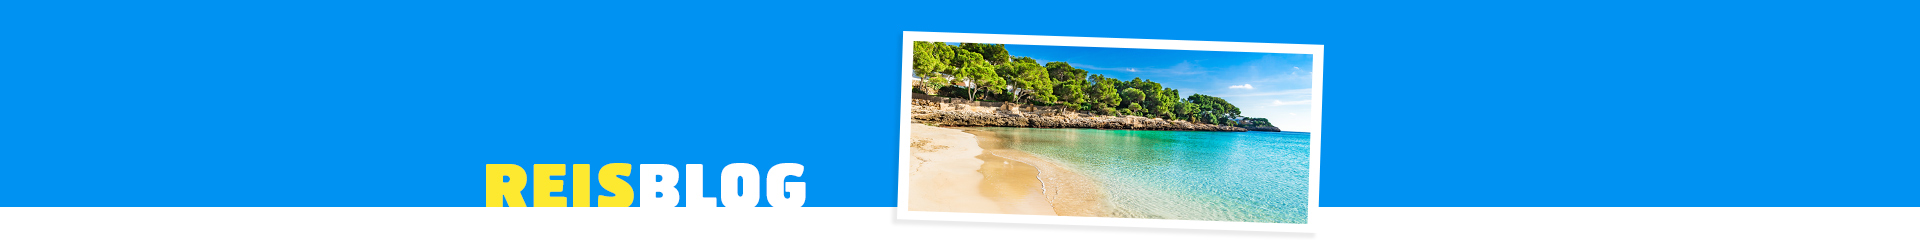 Het mooie strand van Cala d'Or op Mallorca